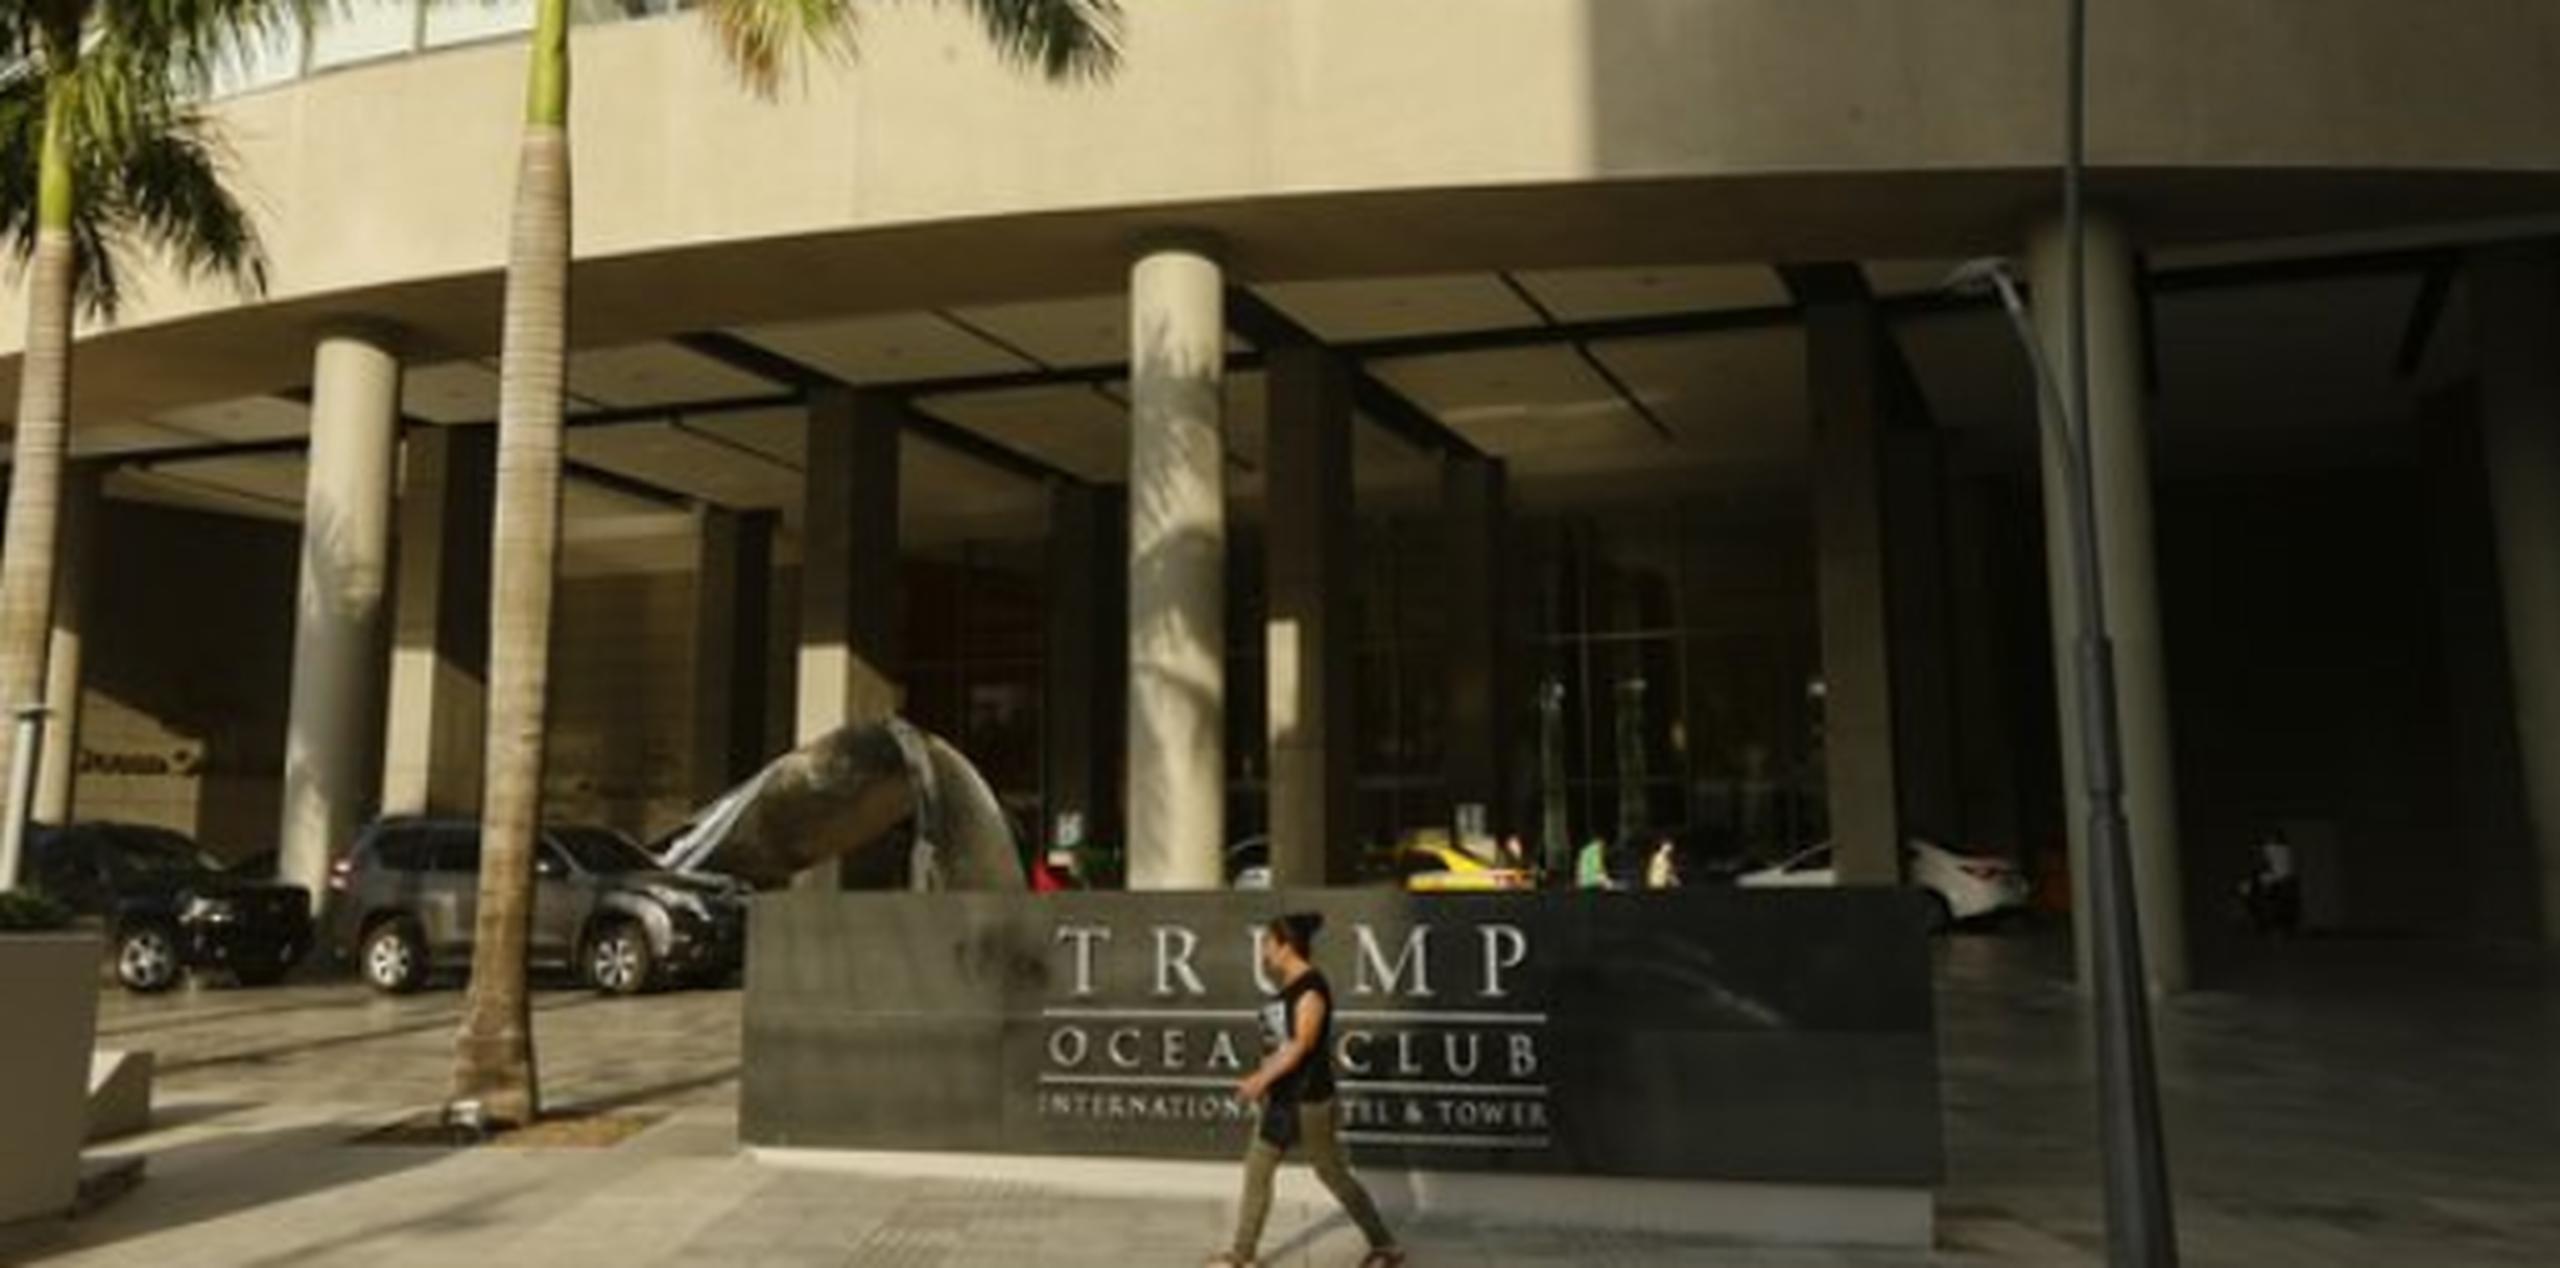 Es probable que pueda surgir una nueva confrontación el fin de semana, pues trabajadores de seguridad de Trump se instalaron a tempranas horas del sábado en la entrada del hotel, dijeron testigos. (AP)